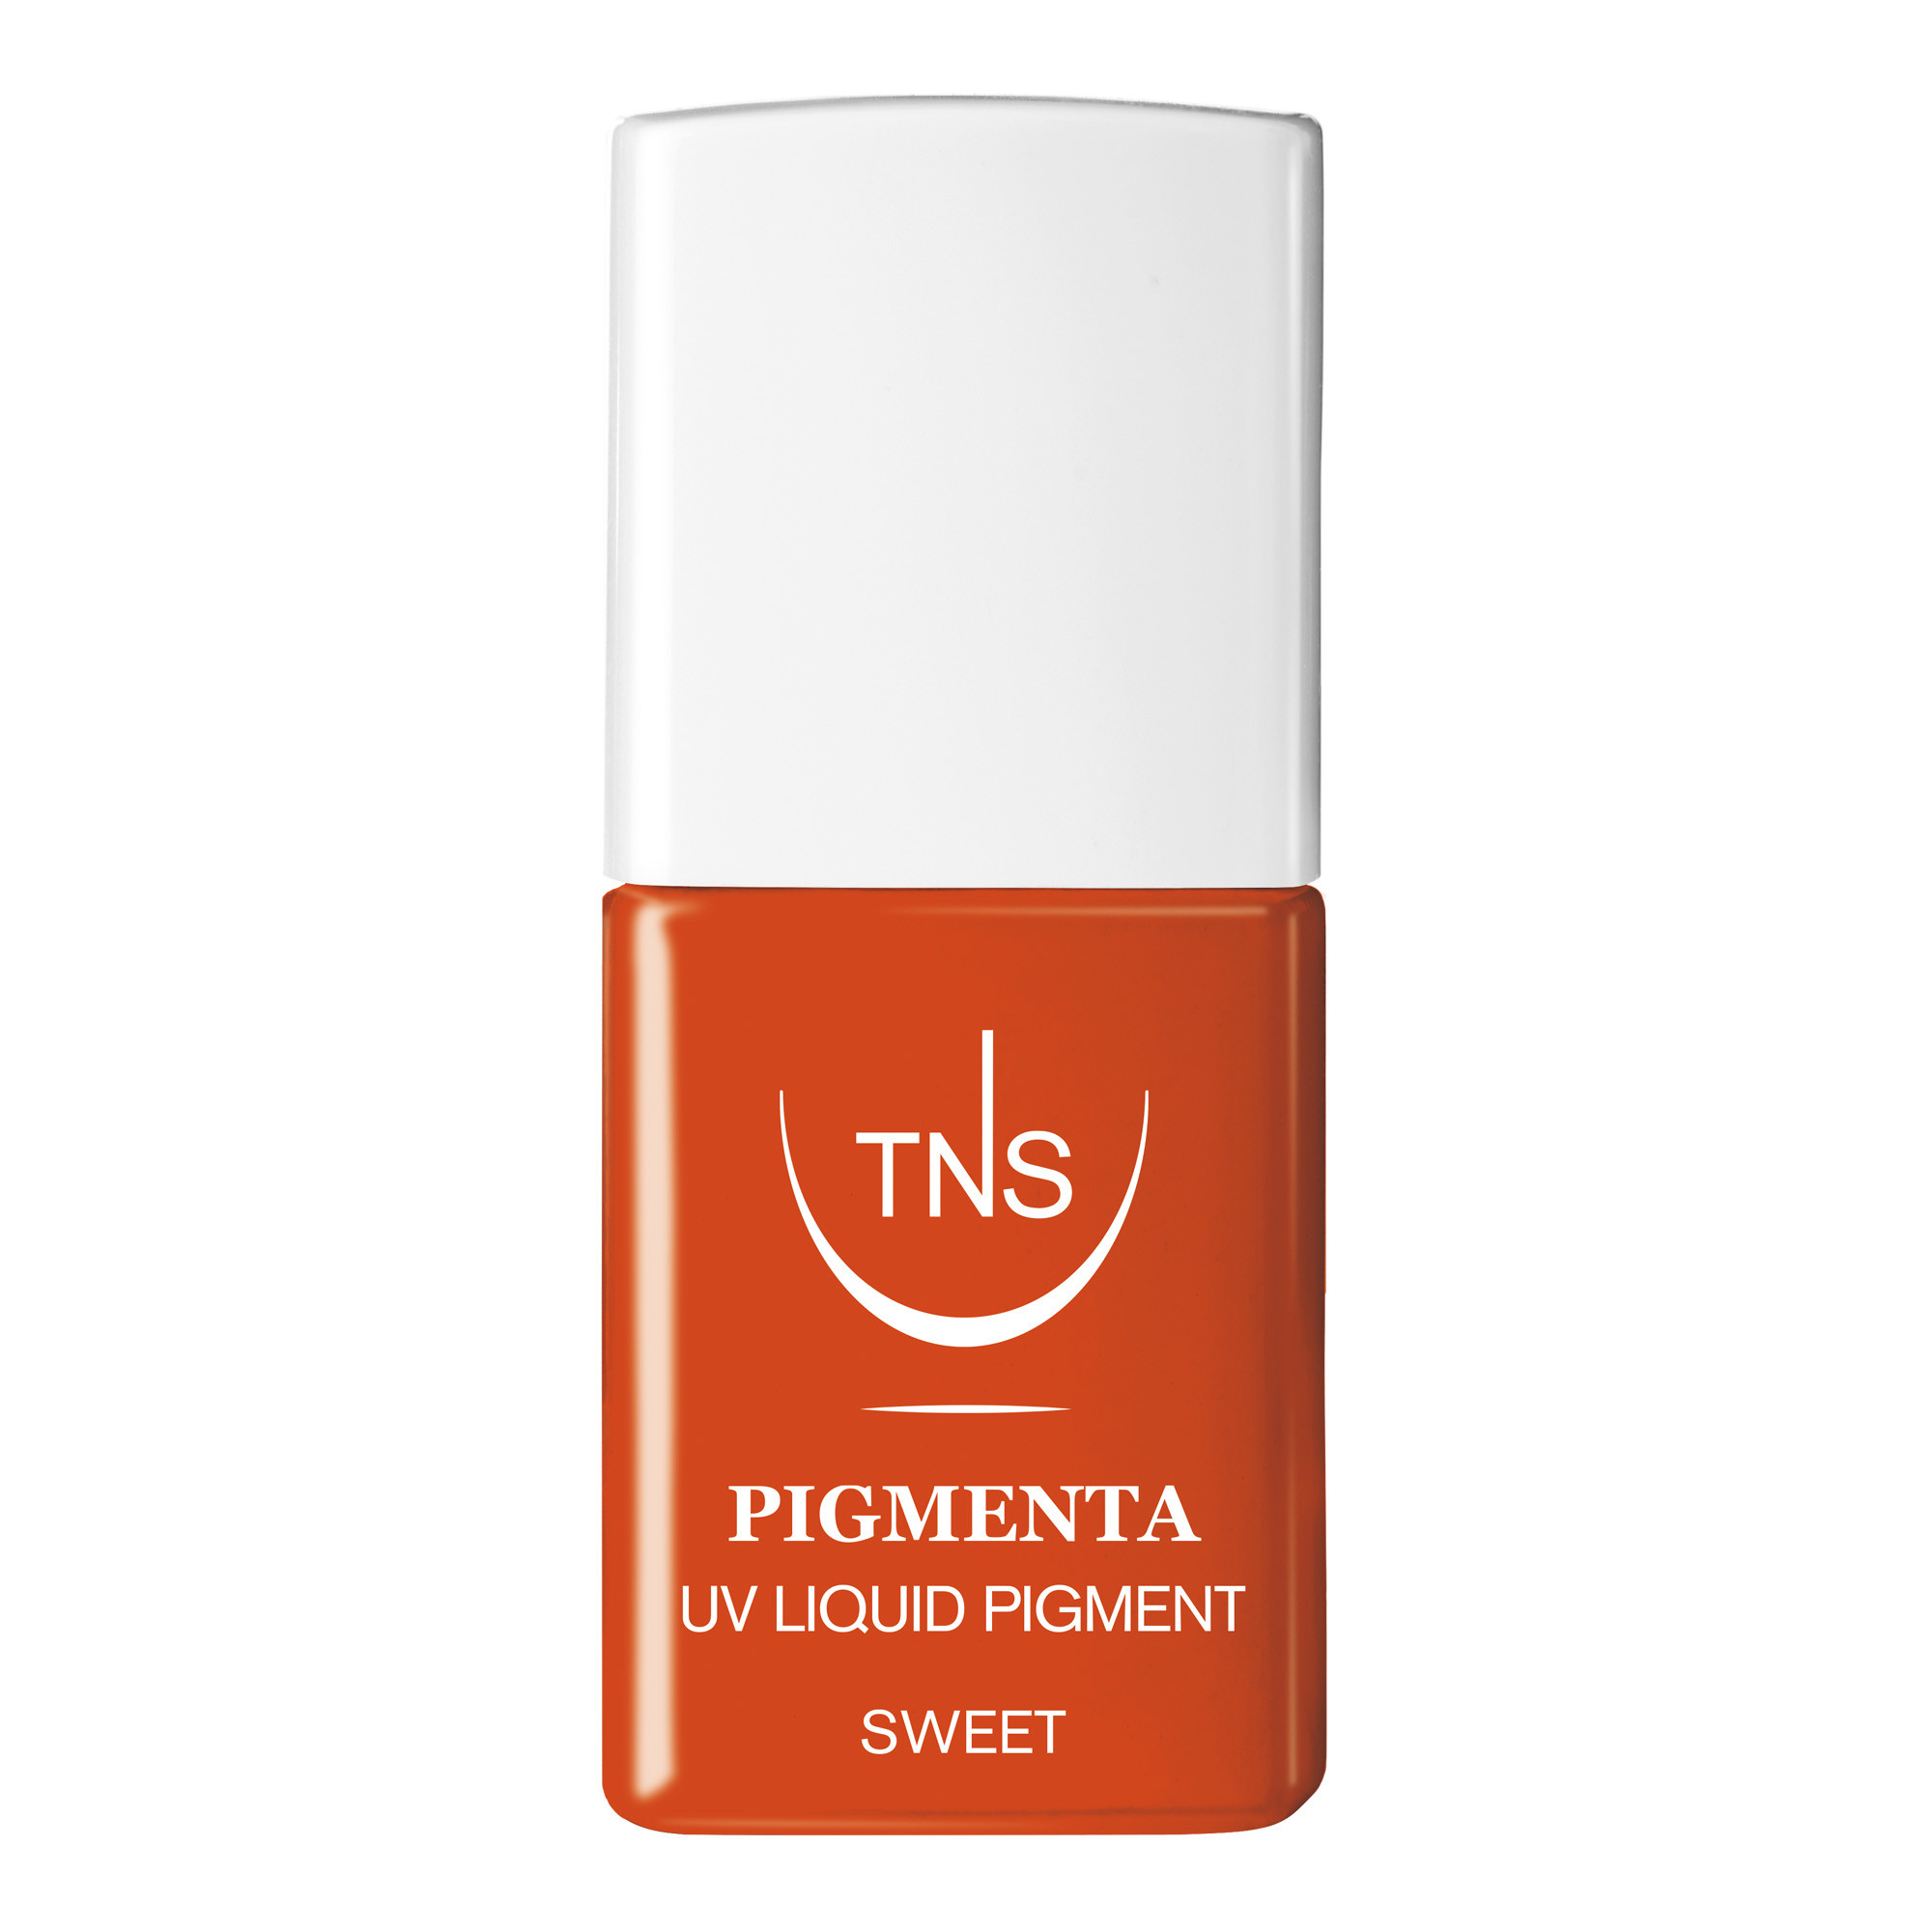 UV Liquid Pigment Sweet Orange 10 ml Pigmenta TNS